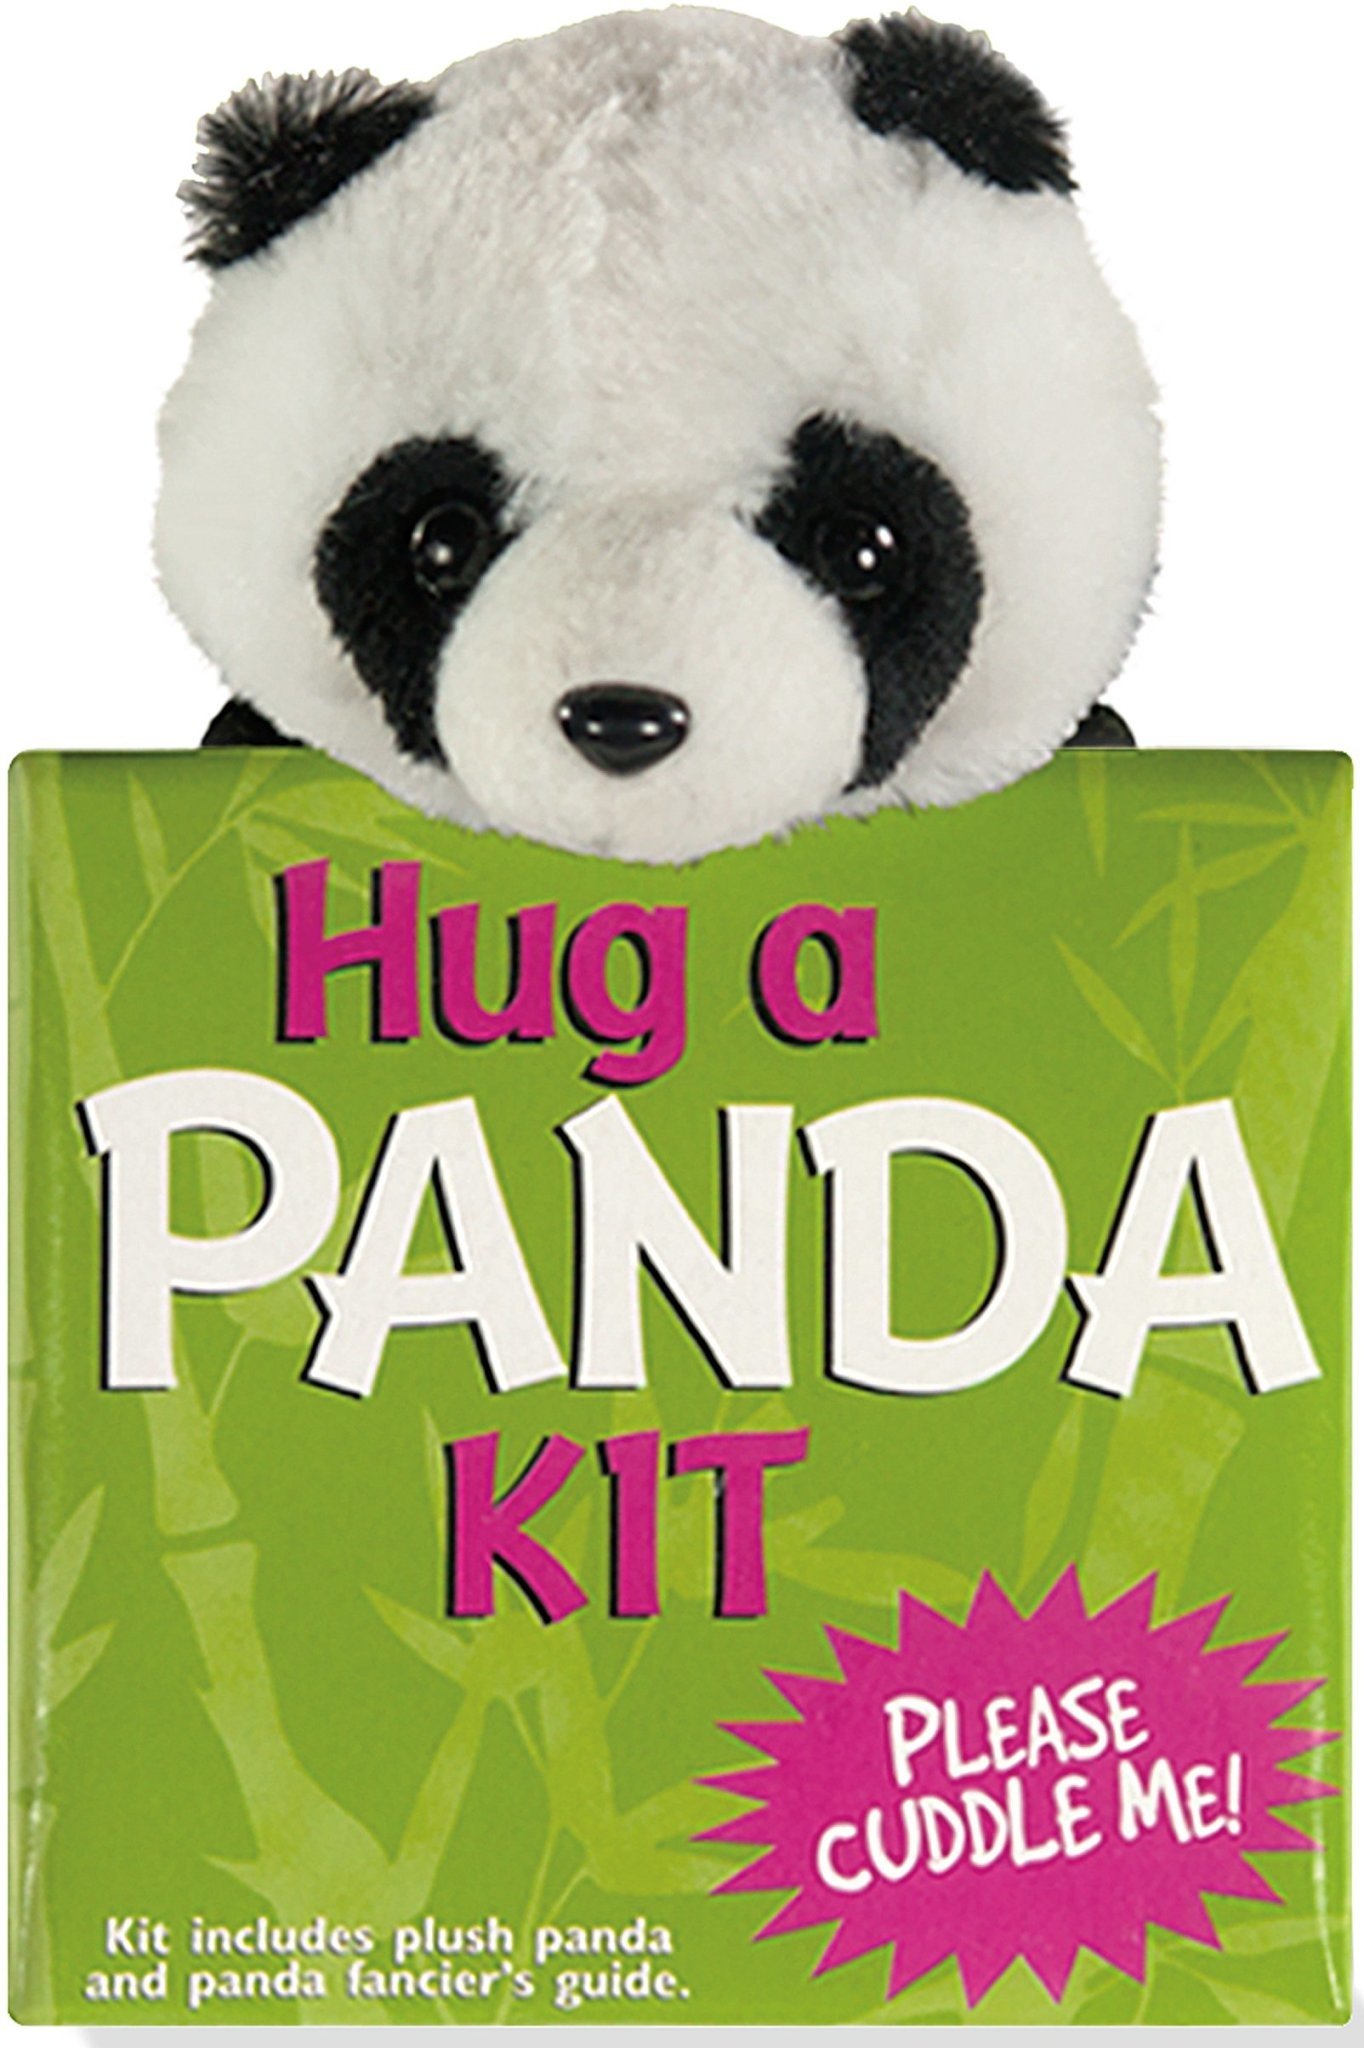 panda cute hug